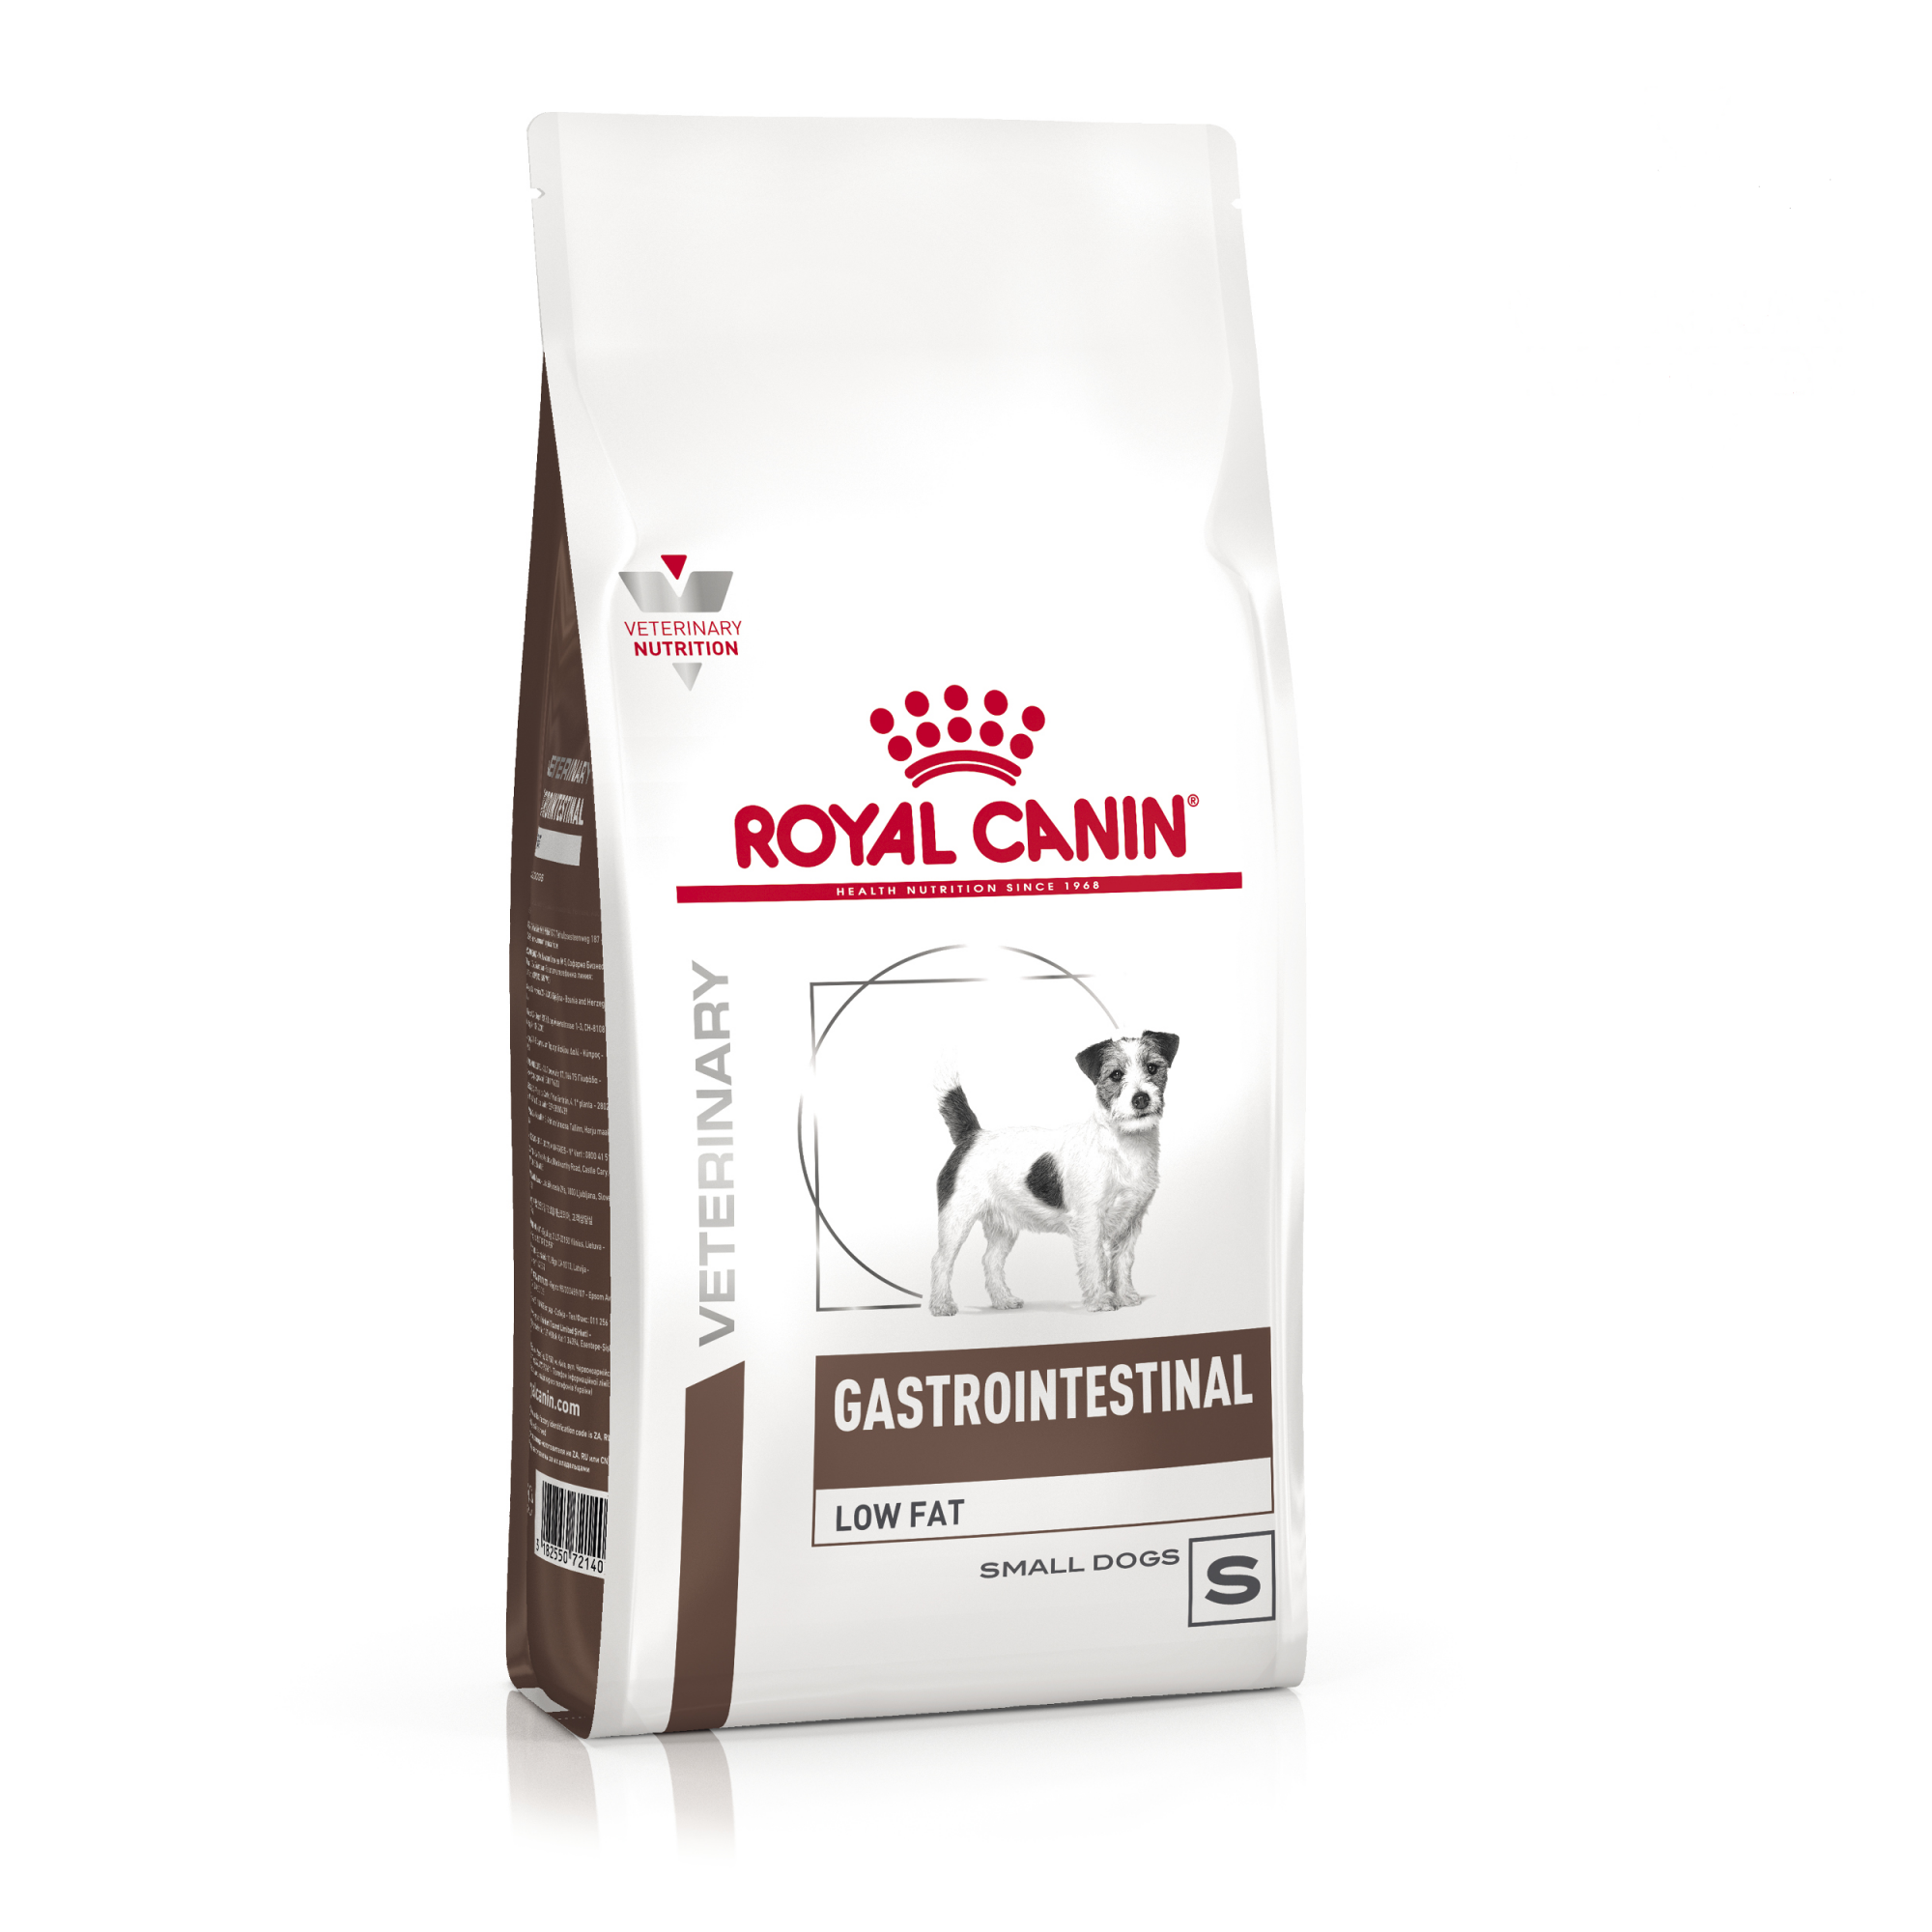 Купить сухой корм для собак Royal Canin Gastro, при нарушениях пищеварения, для малых пород 3 кг, цены на Мегамаркет | Артикул: 100028092075